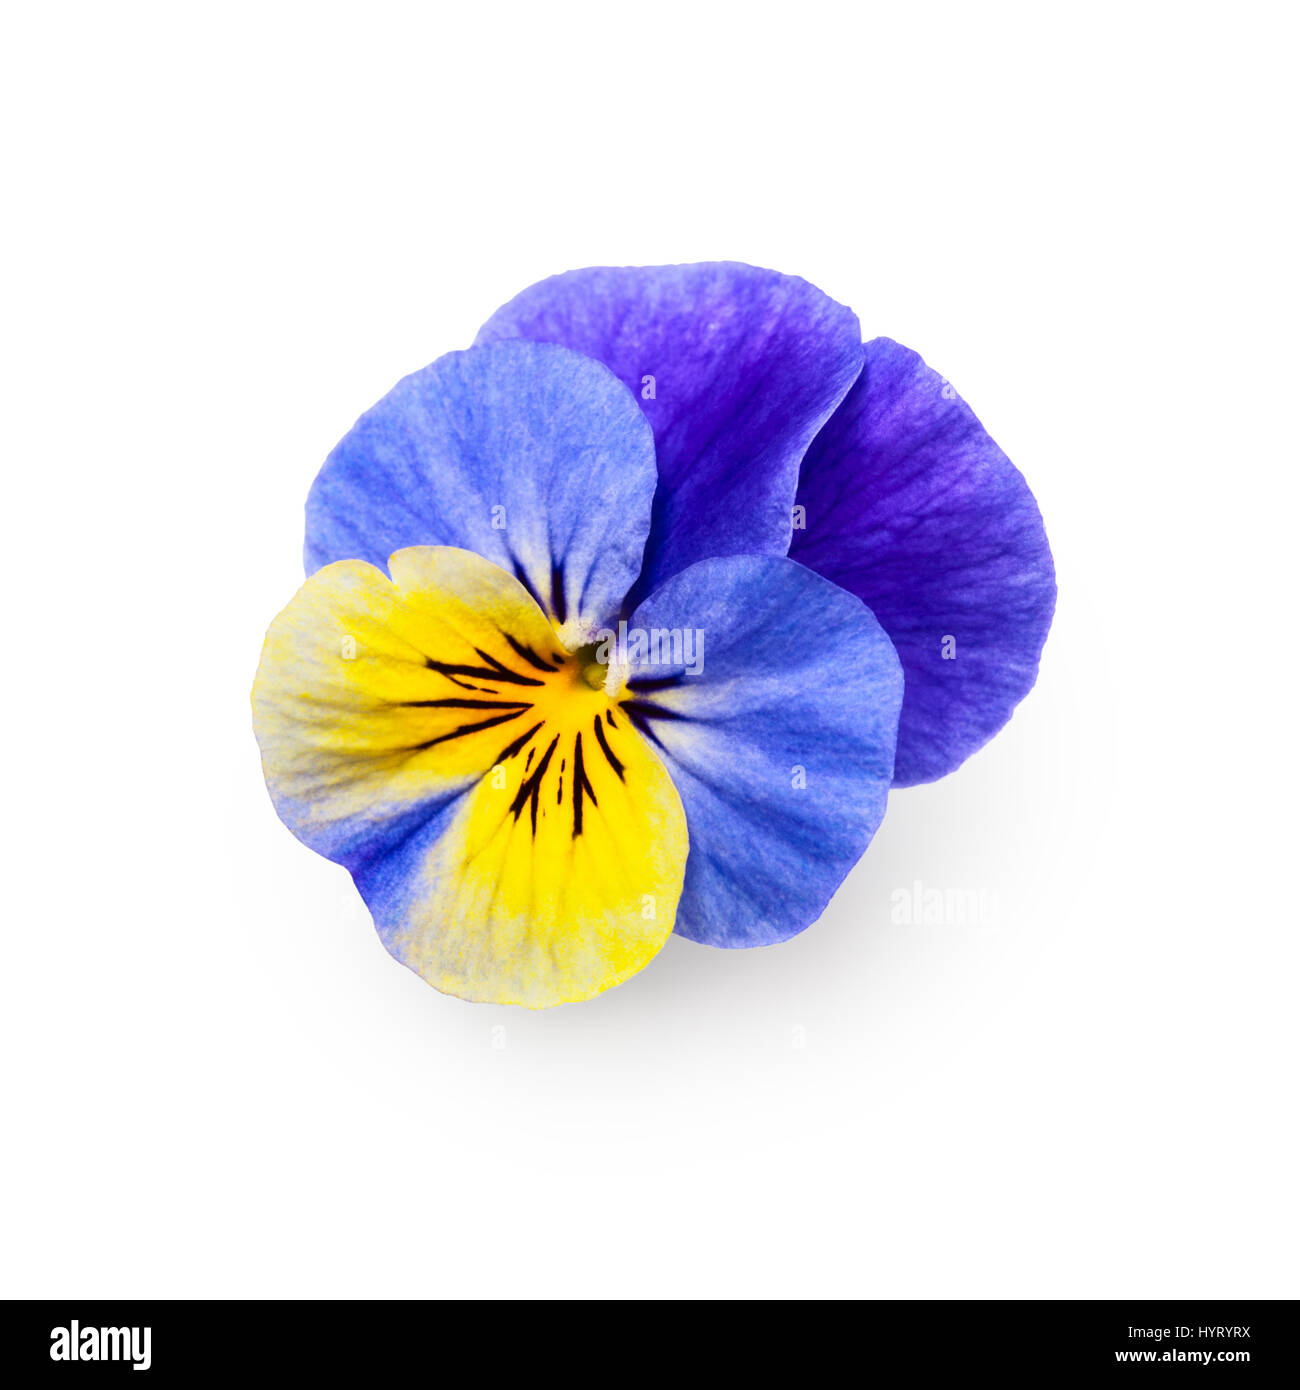 Pansy viola tricolor flor aislado sobre fondo blanco trazado de recorte incluido, vista superior Foto de stock